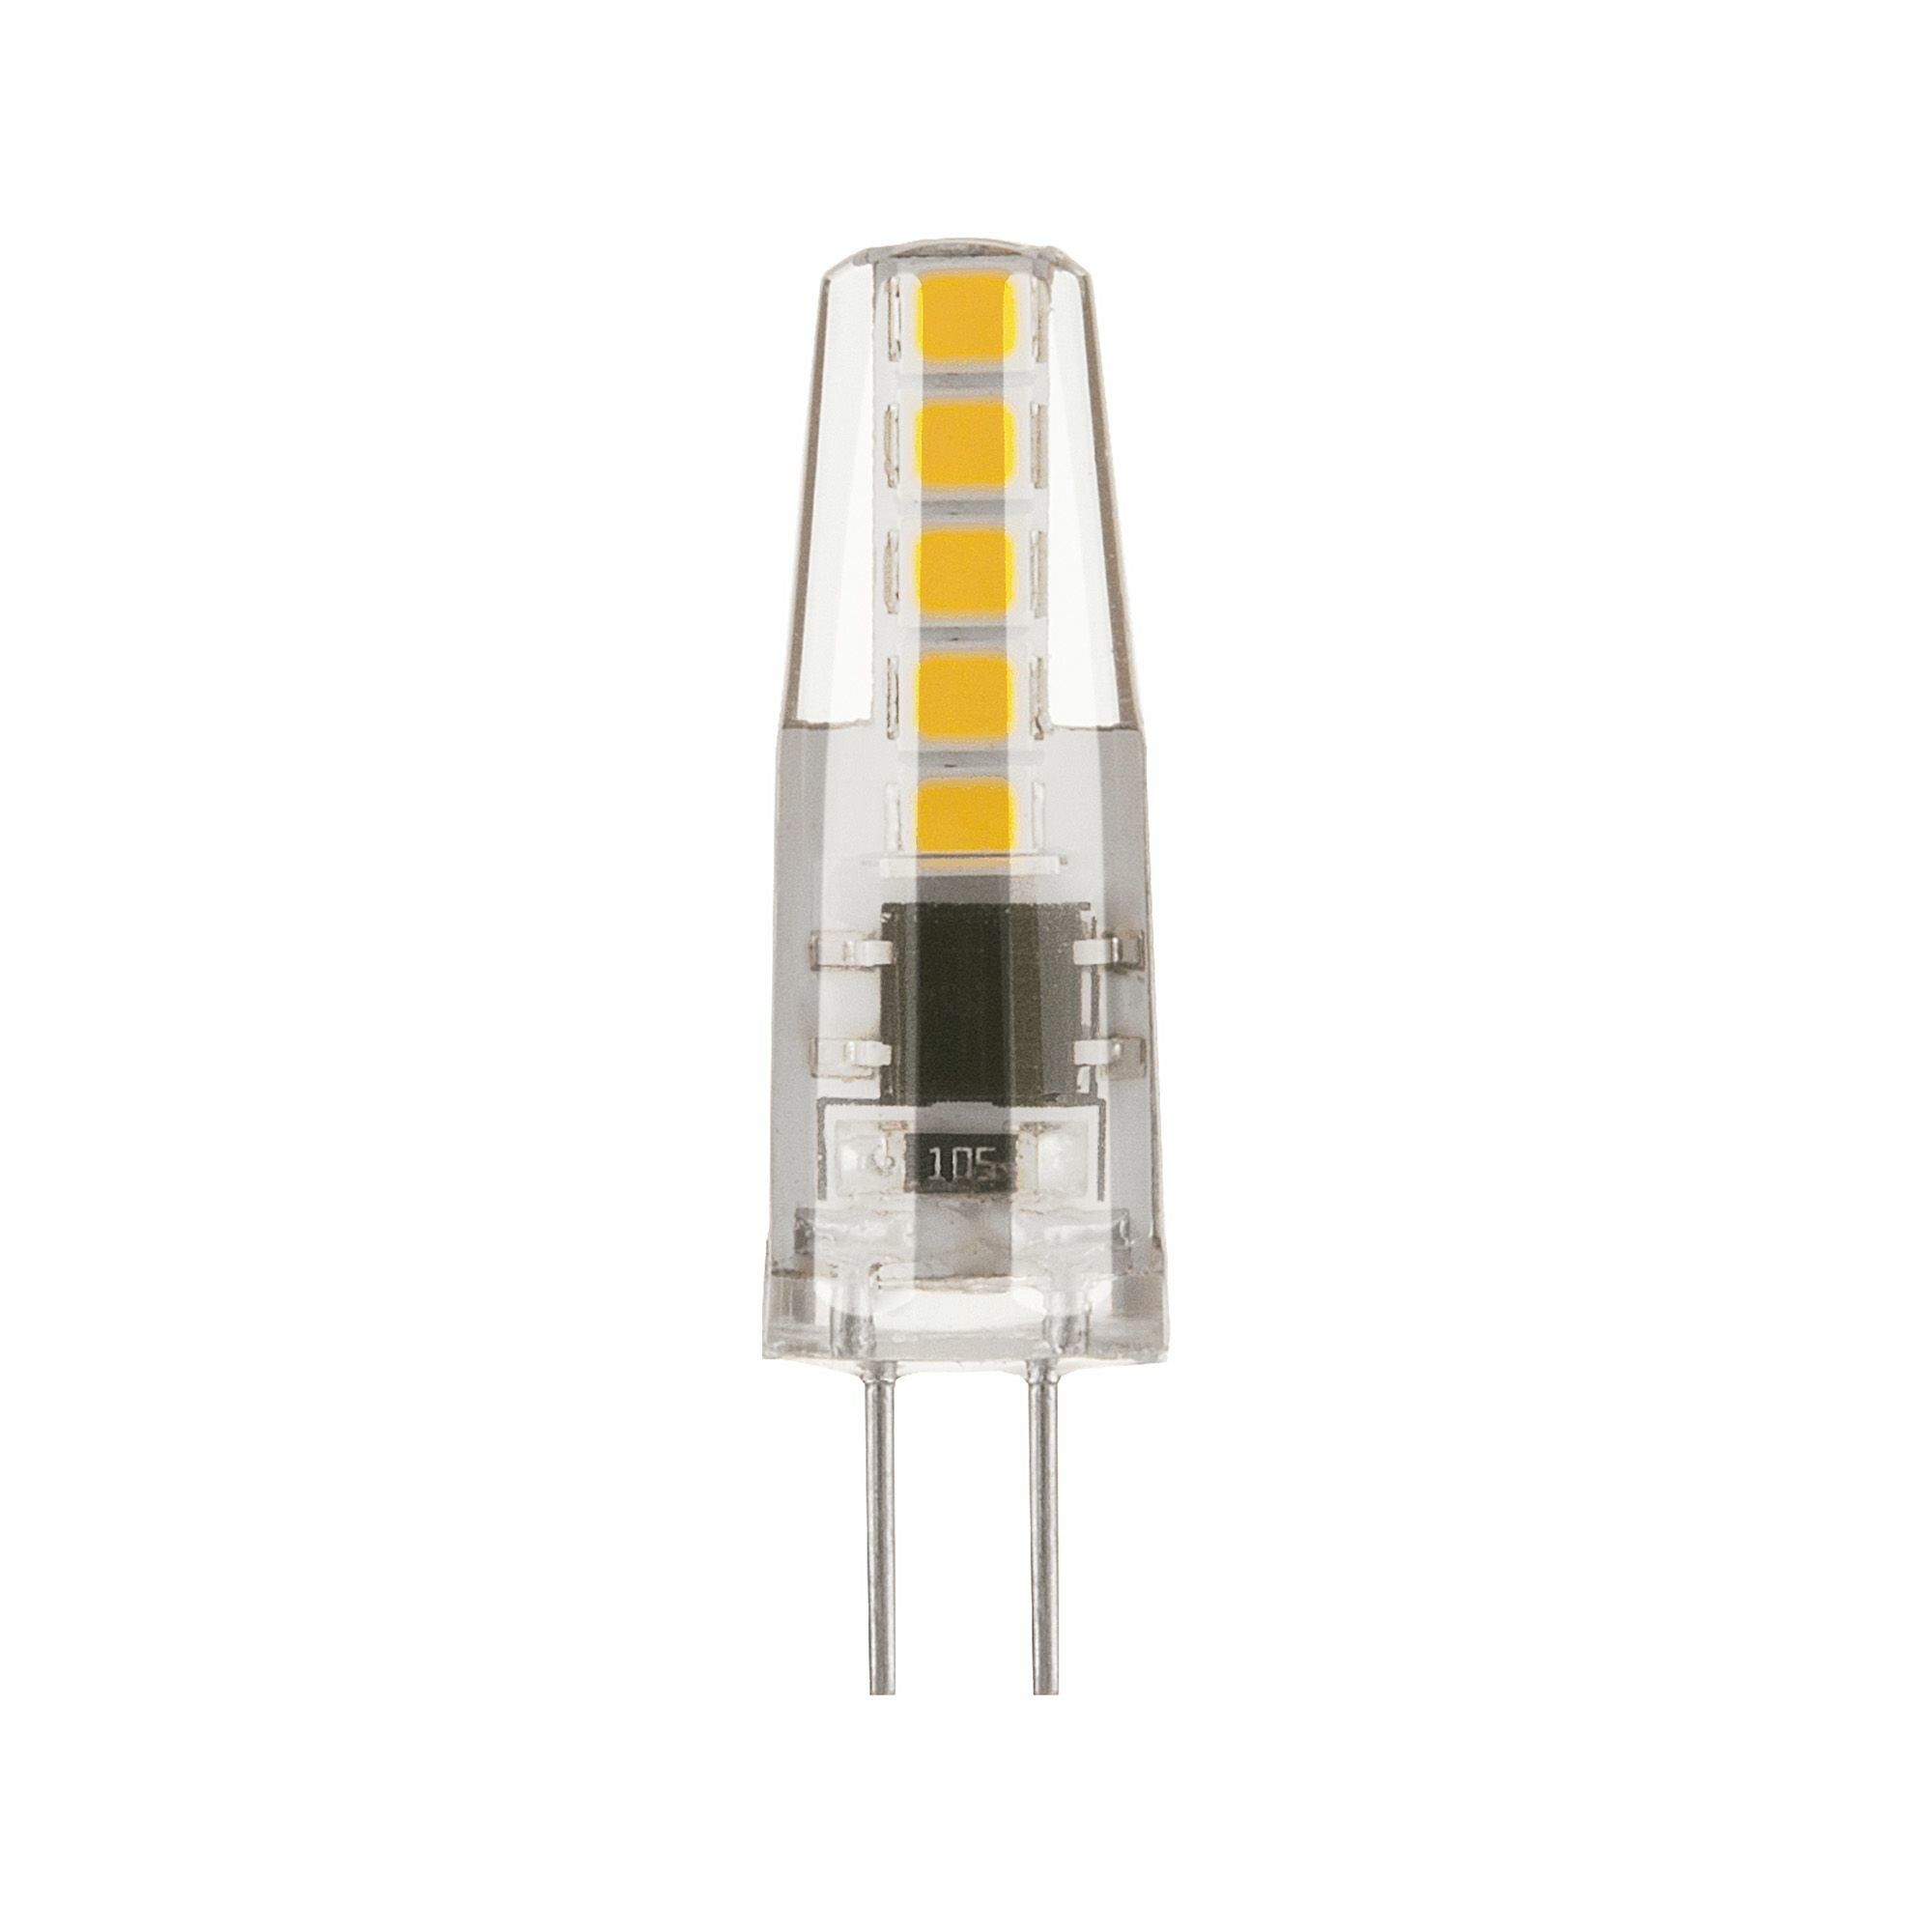 Лампа светодиодная Elektrostandard G4 220 В 3 Вт капсула прозрачная 270 лм теплый желтый свет - фото №2